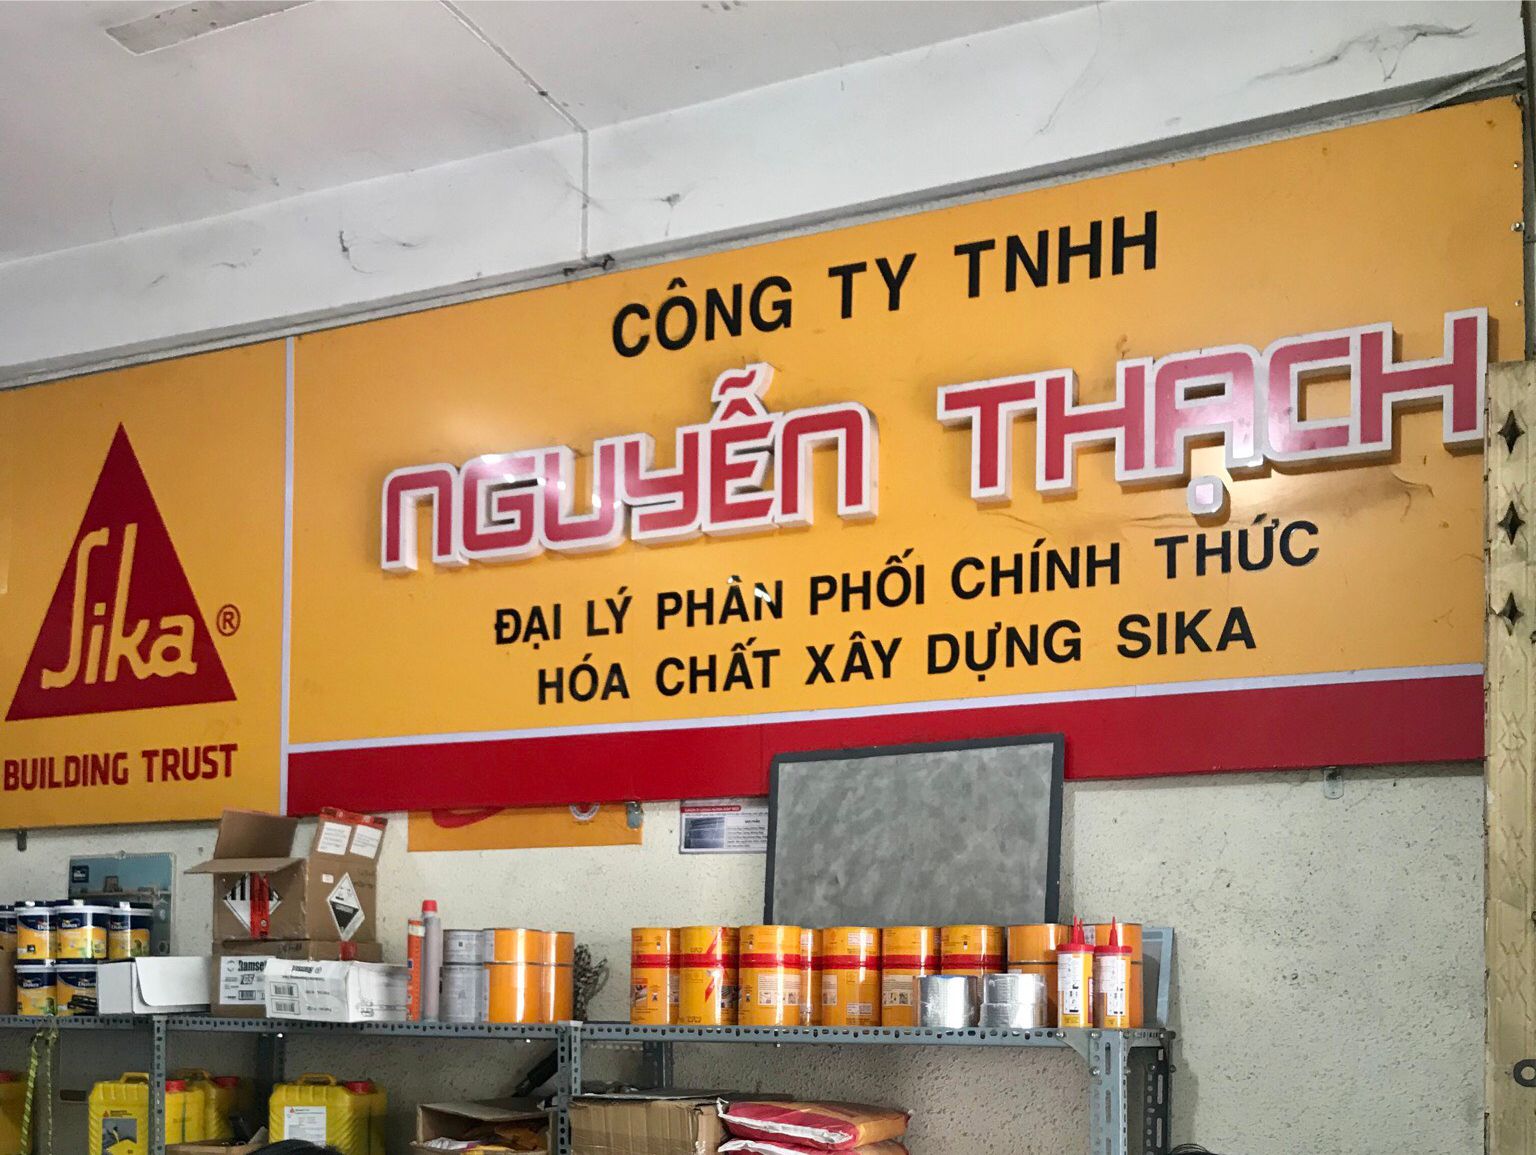 Công ty TNHH Nguyễn Thạch